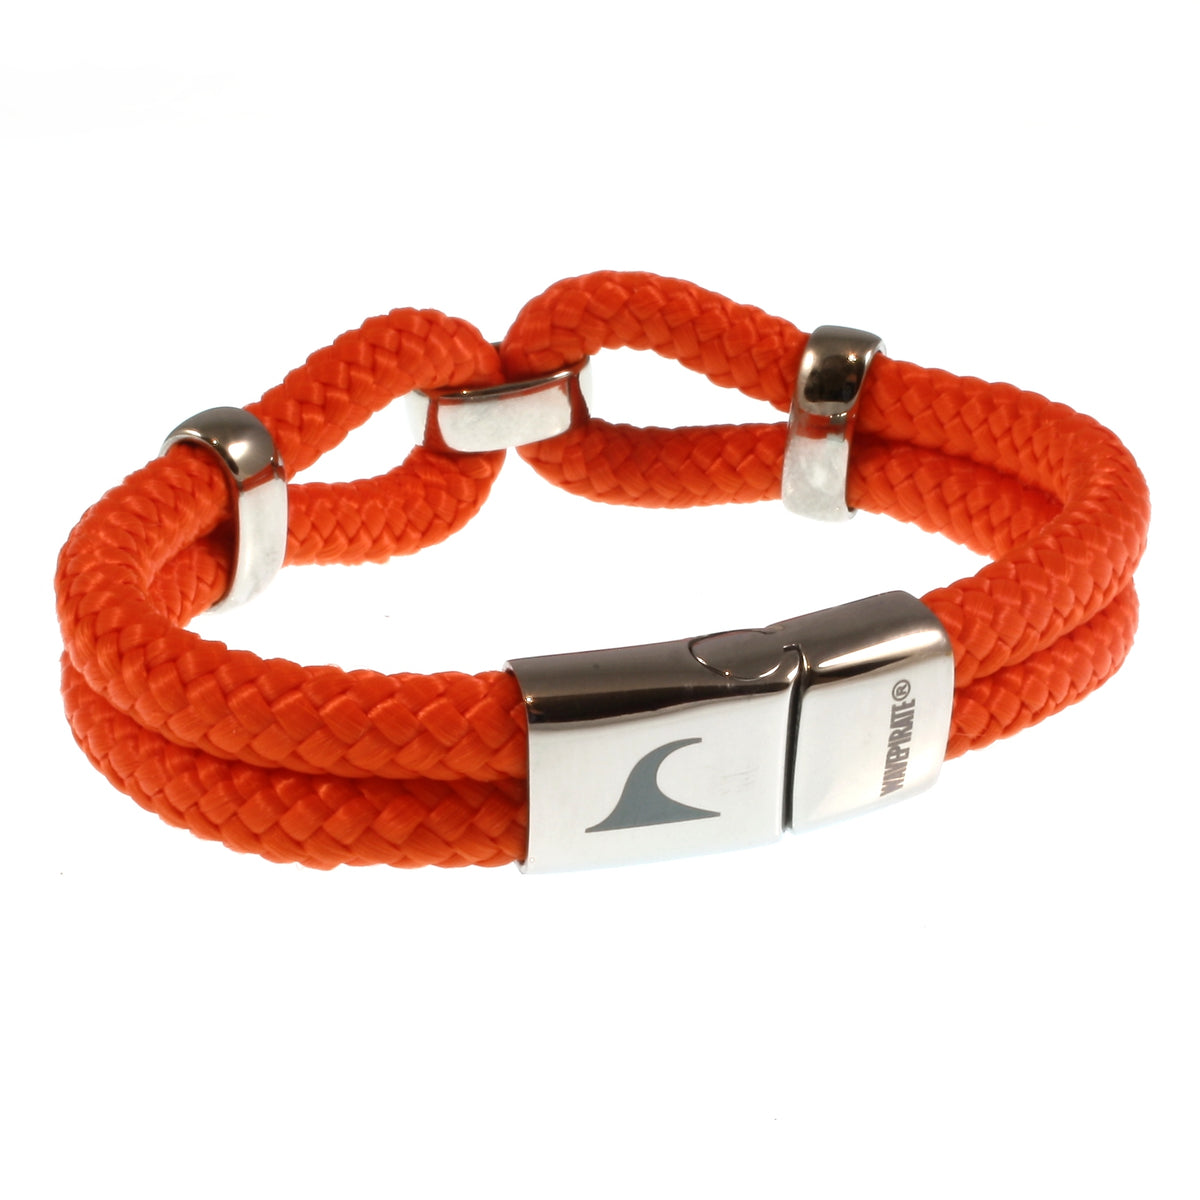 Damen-Segeltau-armband-roma-orange-geflochten-Edelstahlverschluss-hinten-wavepirate-shop-st